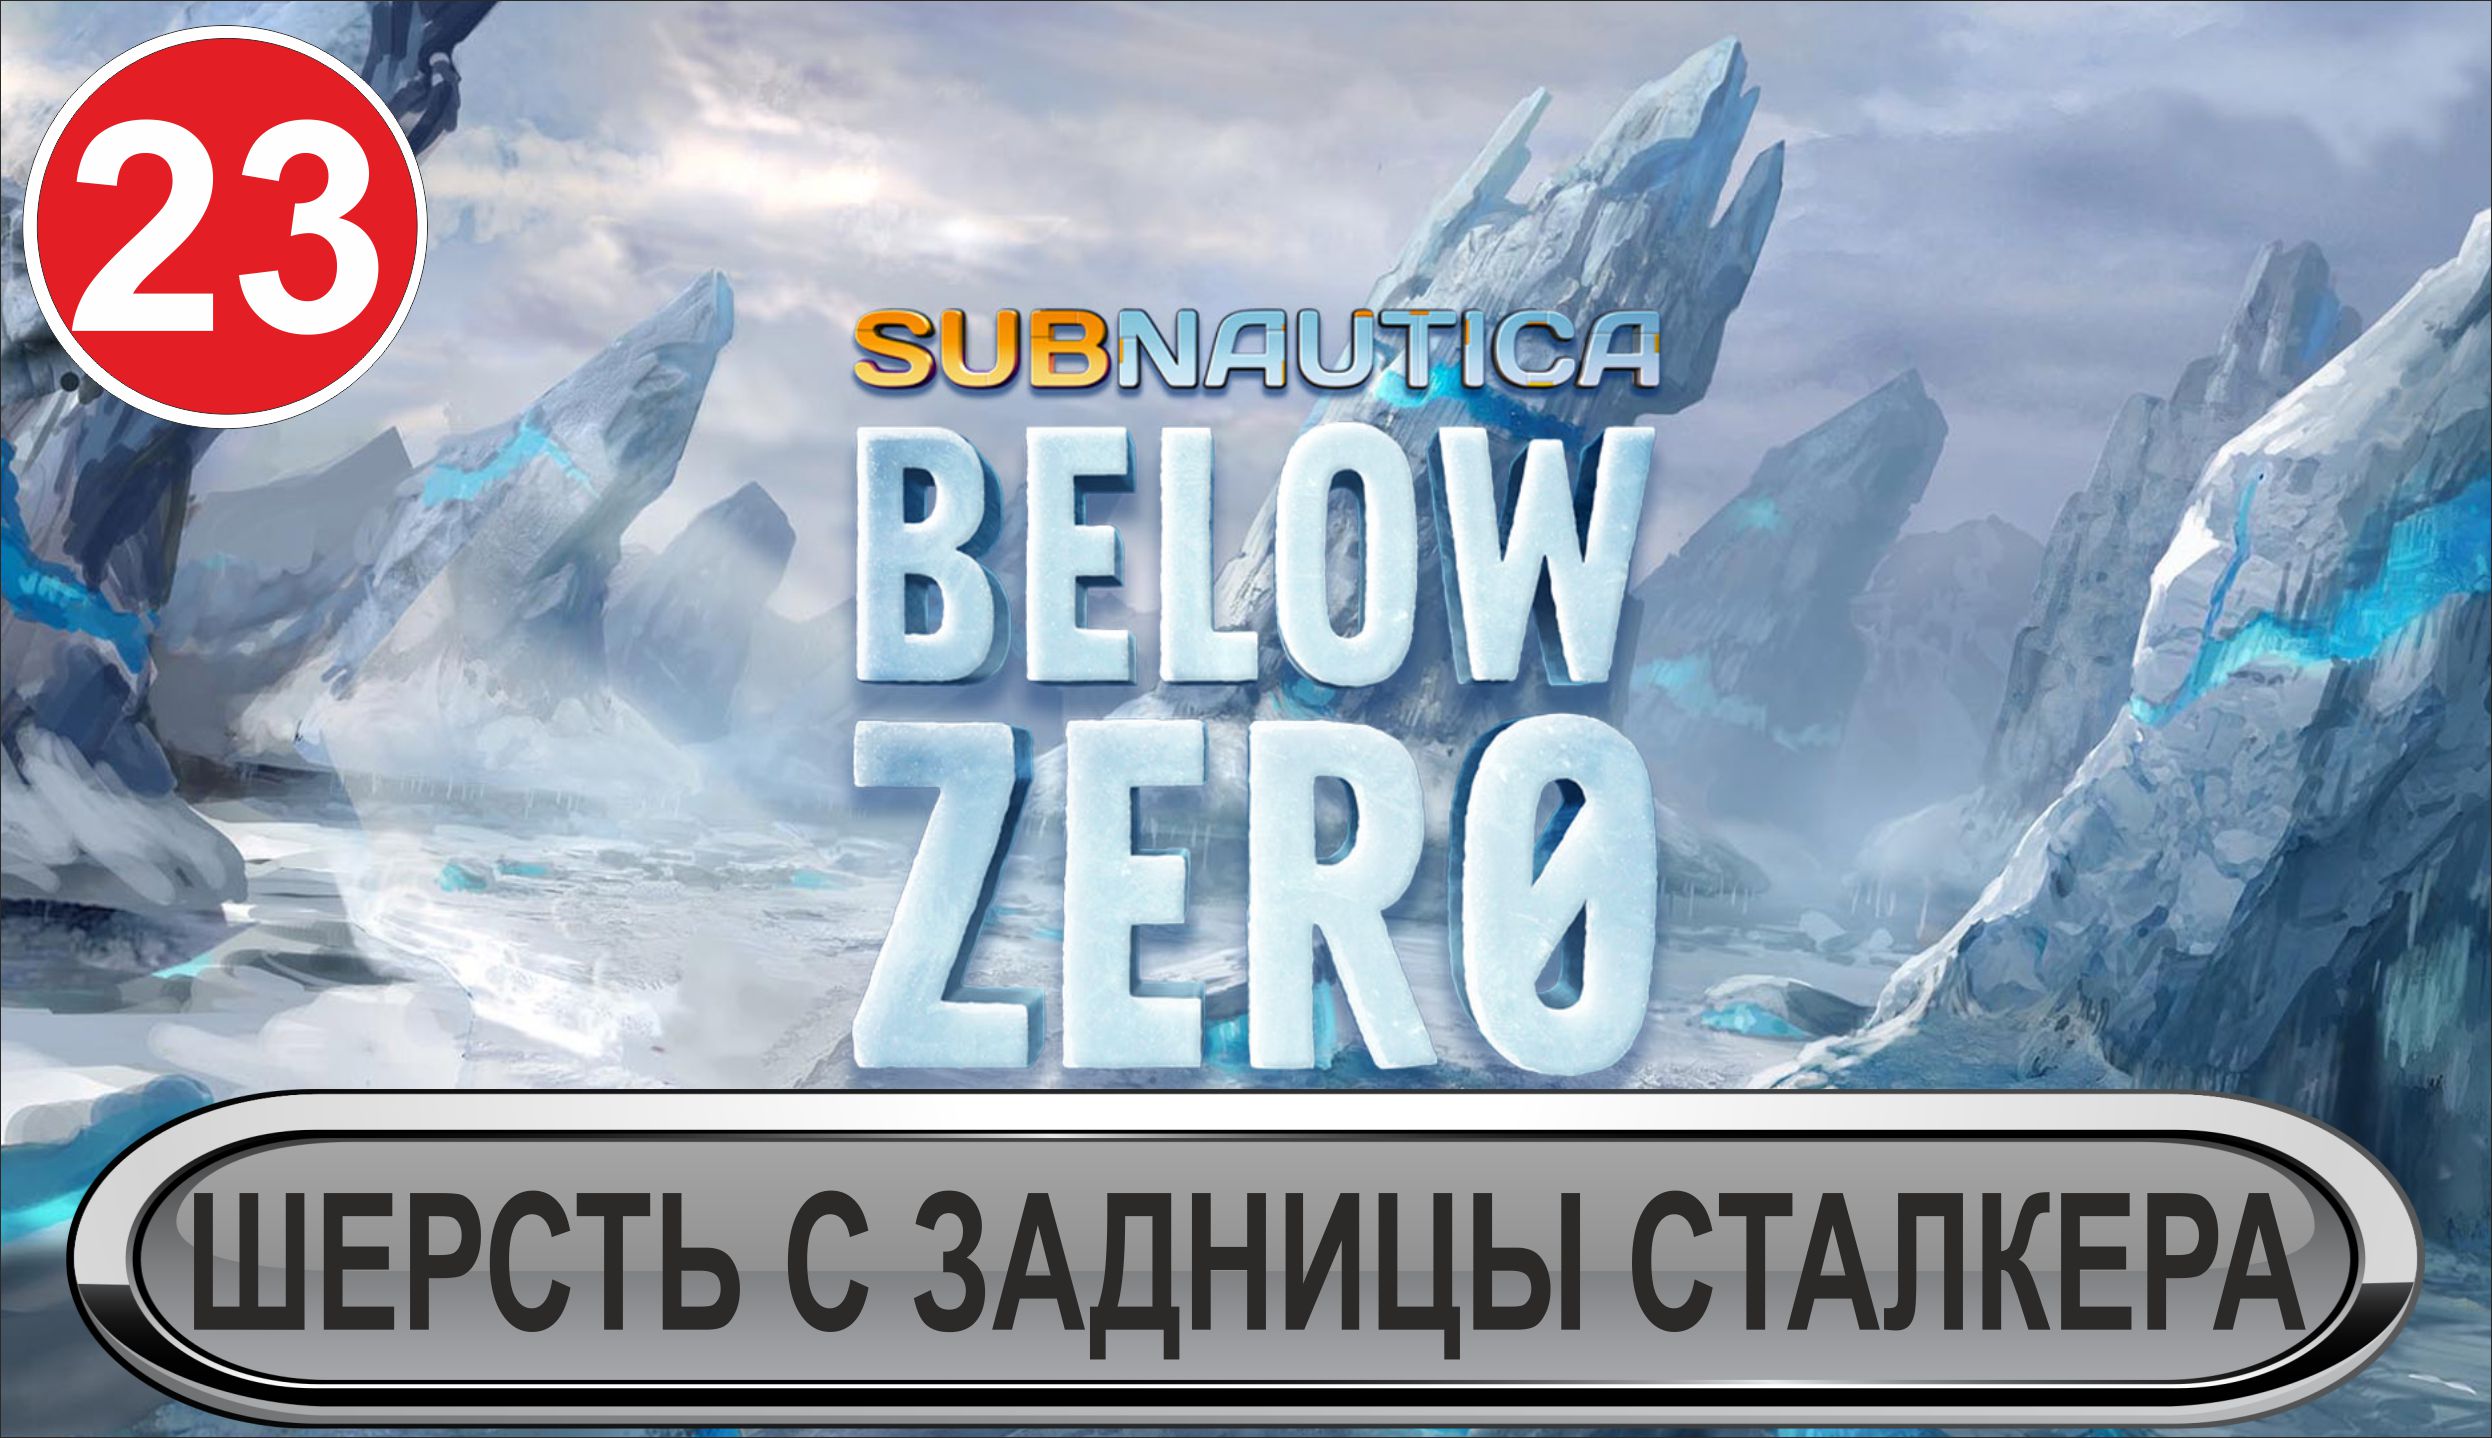 Subnautica: Below Zero - Шерсть с задницы сталкера